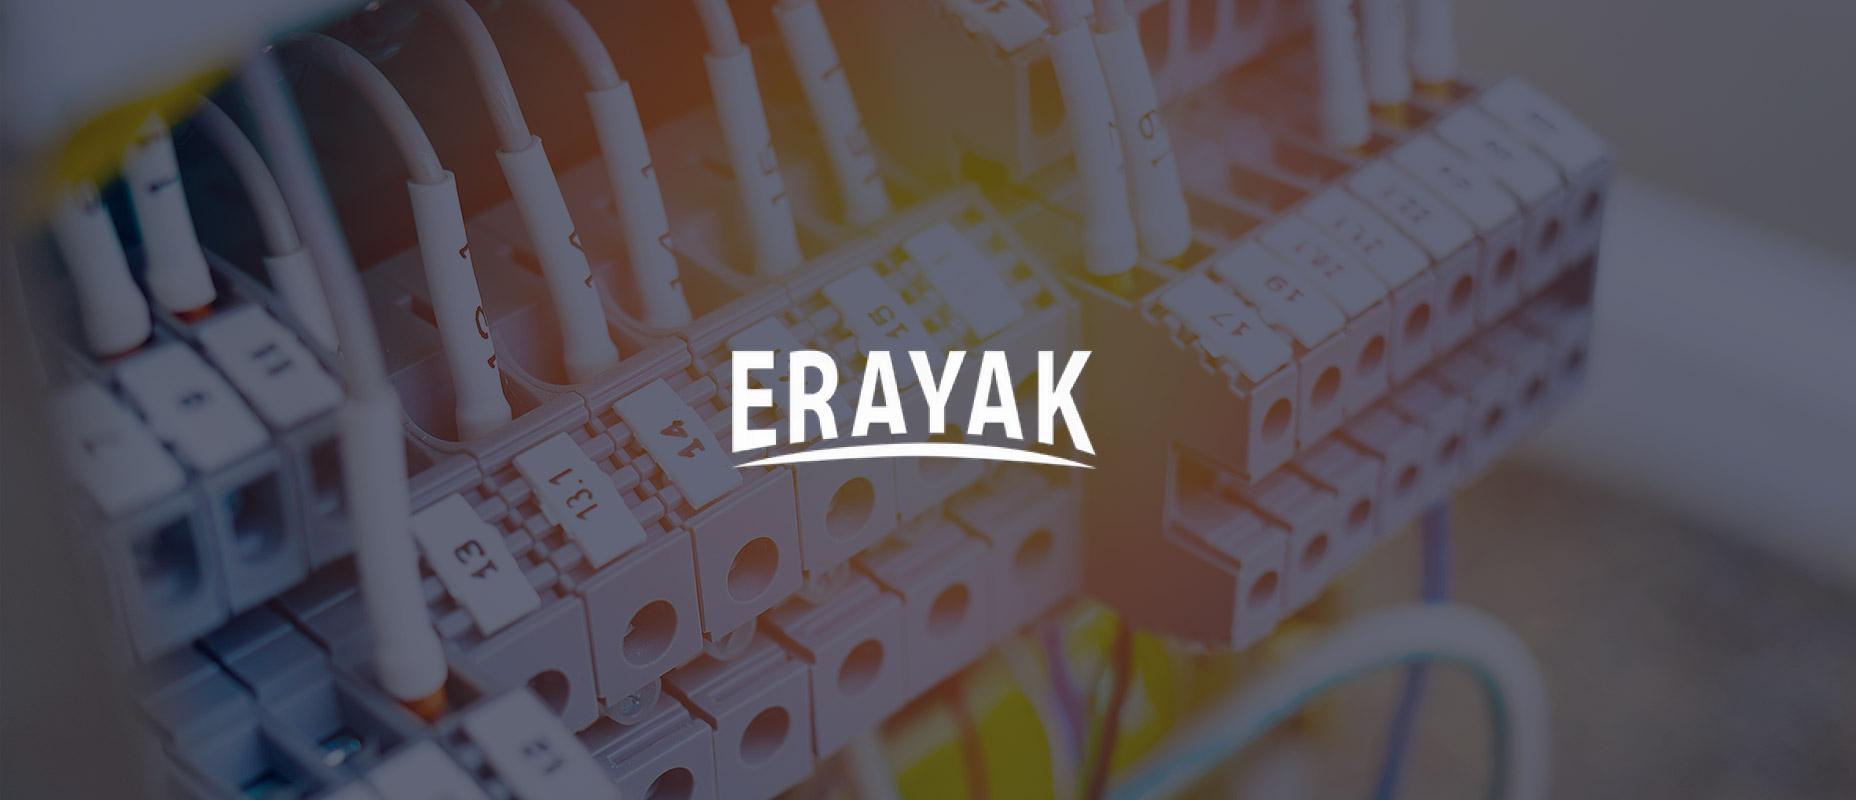 Tập đoàn giải pháp năng lượng Erayak IPO: Hệ thống năng lượng không nối lưới từ Trung Quốc